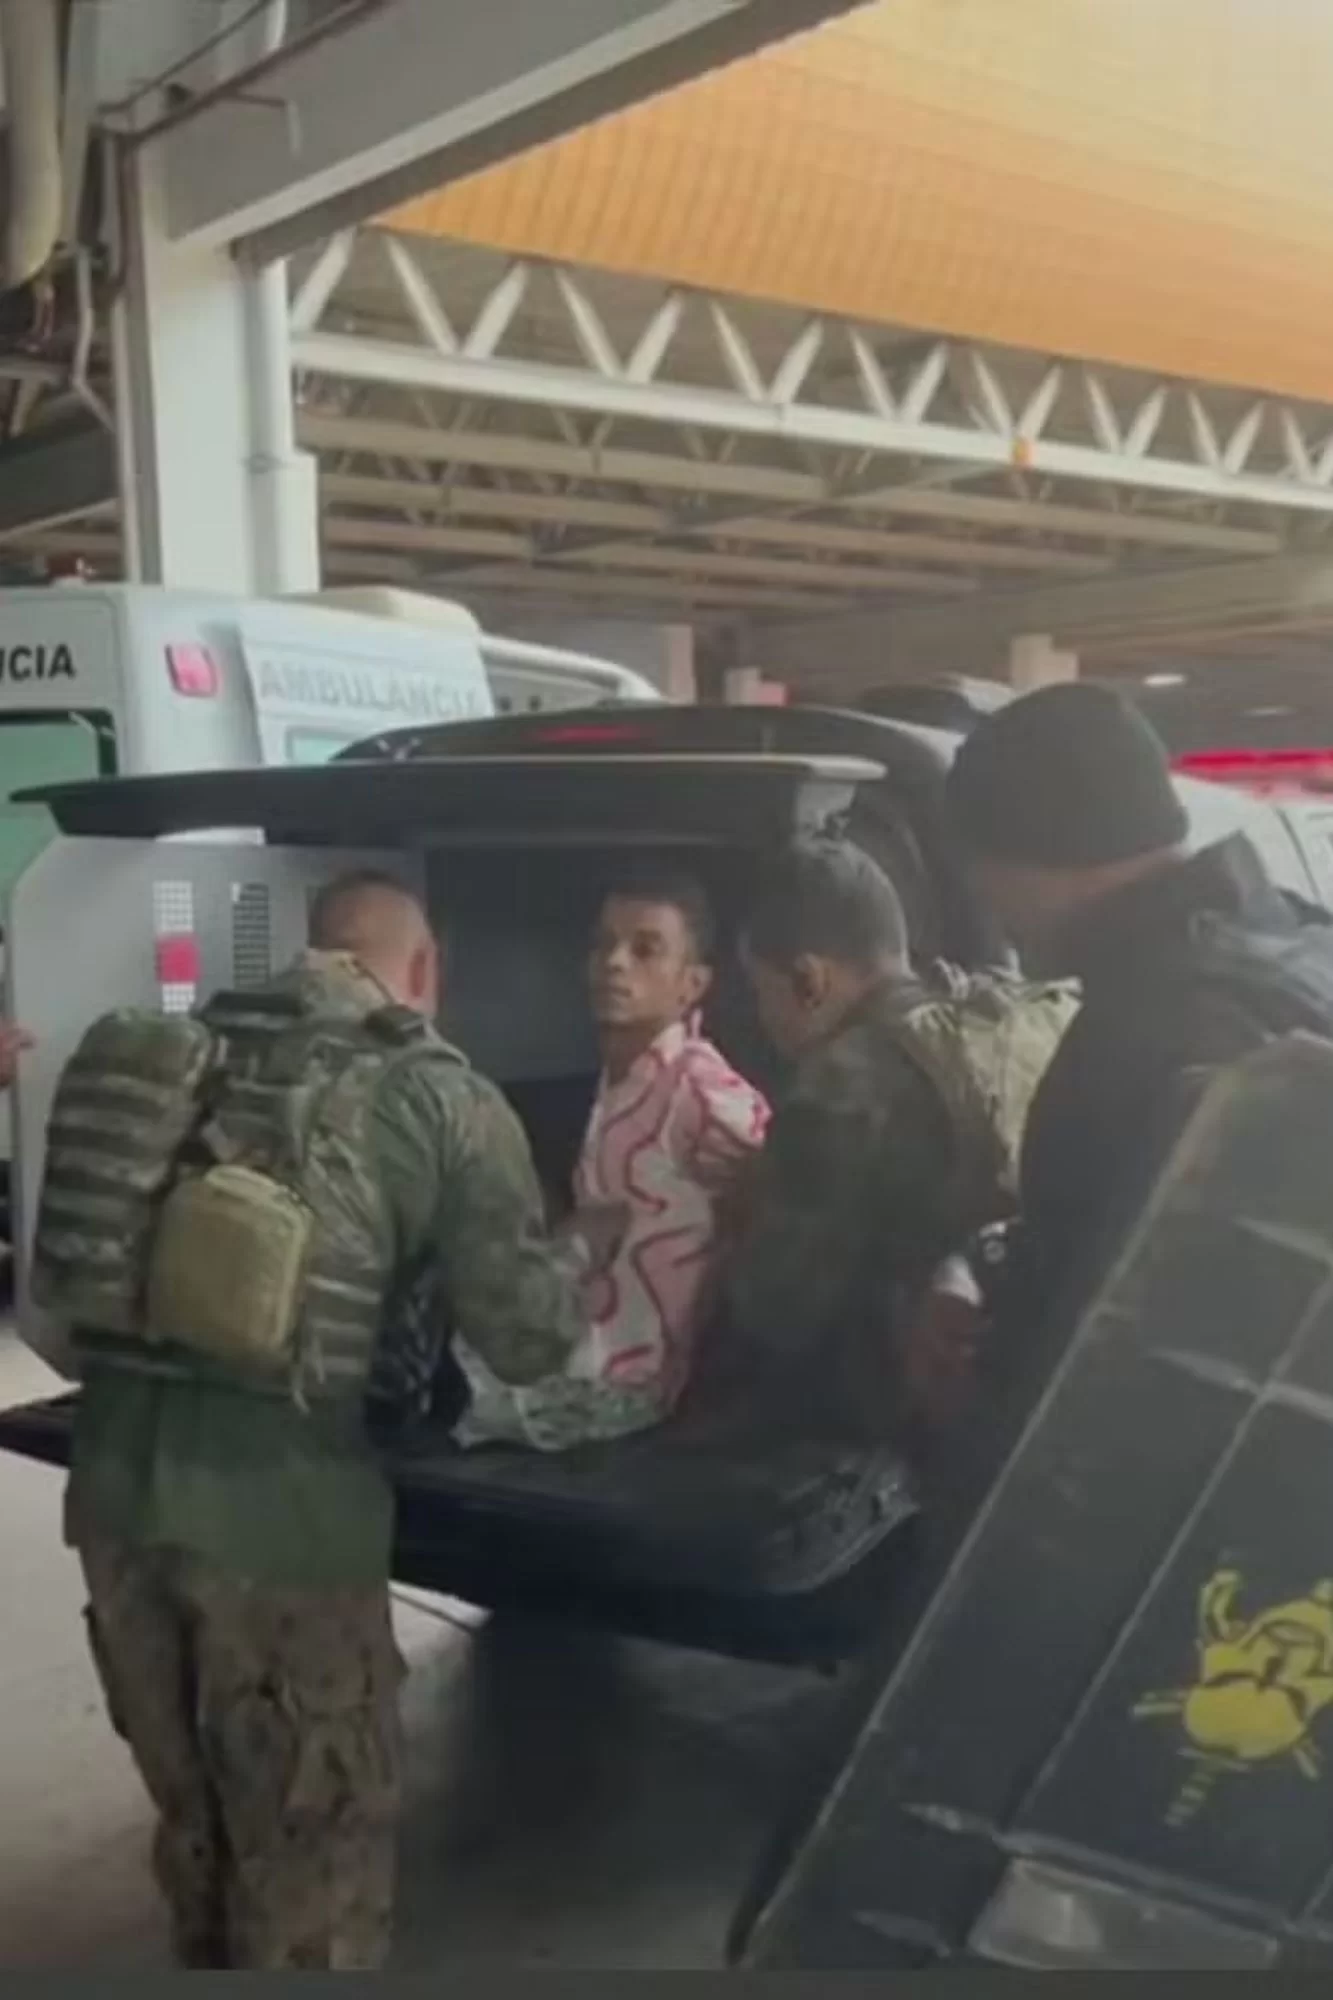 Sequestrador do ônibus, identificado como Paulo Sérgio de Lima, é preso por agentes do Bope após se entregar.   